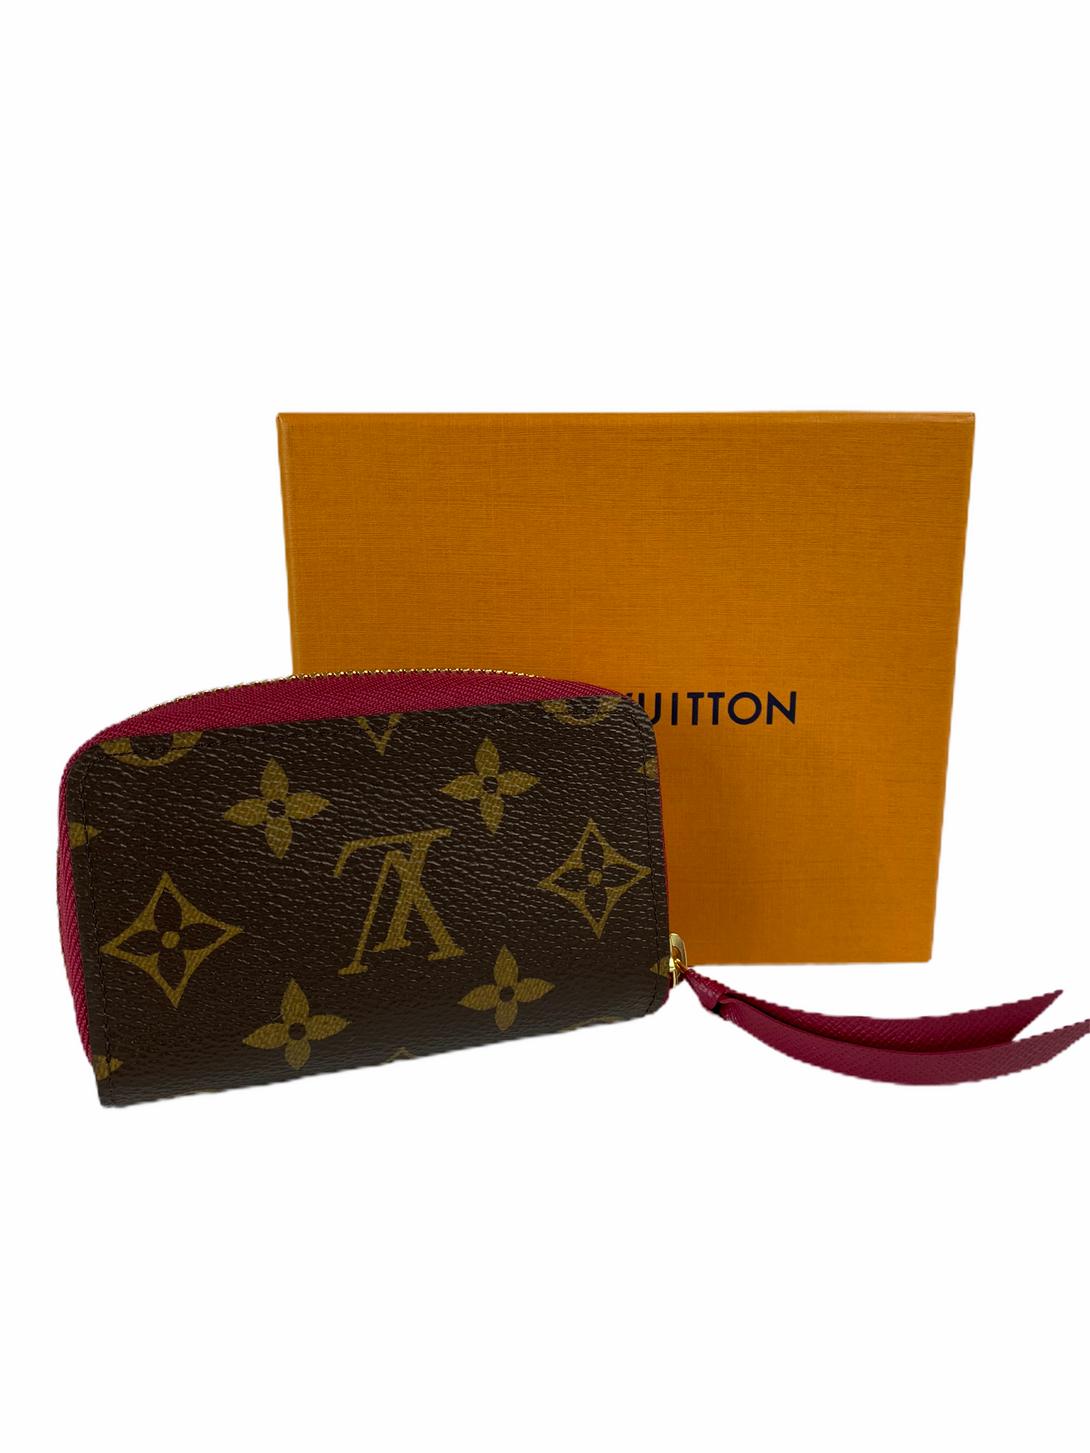 Louis Vuitton Monogram Purse - As Seen on Instagram 26/08/2020 - Siopaella Designer Exchange